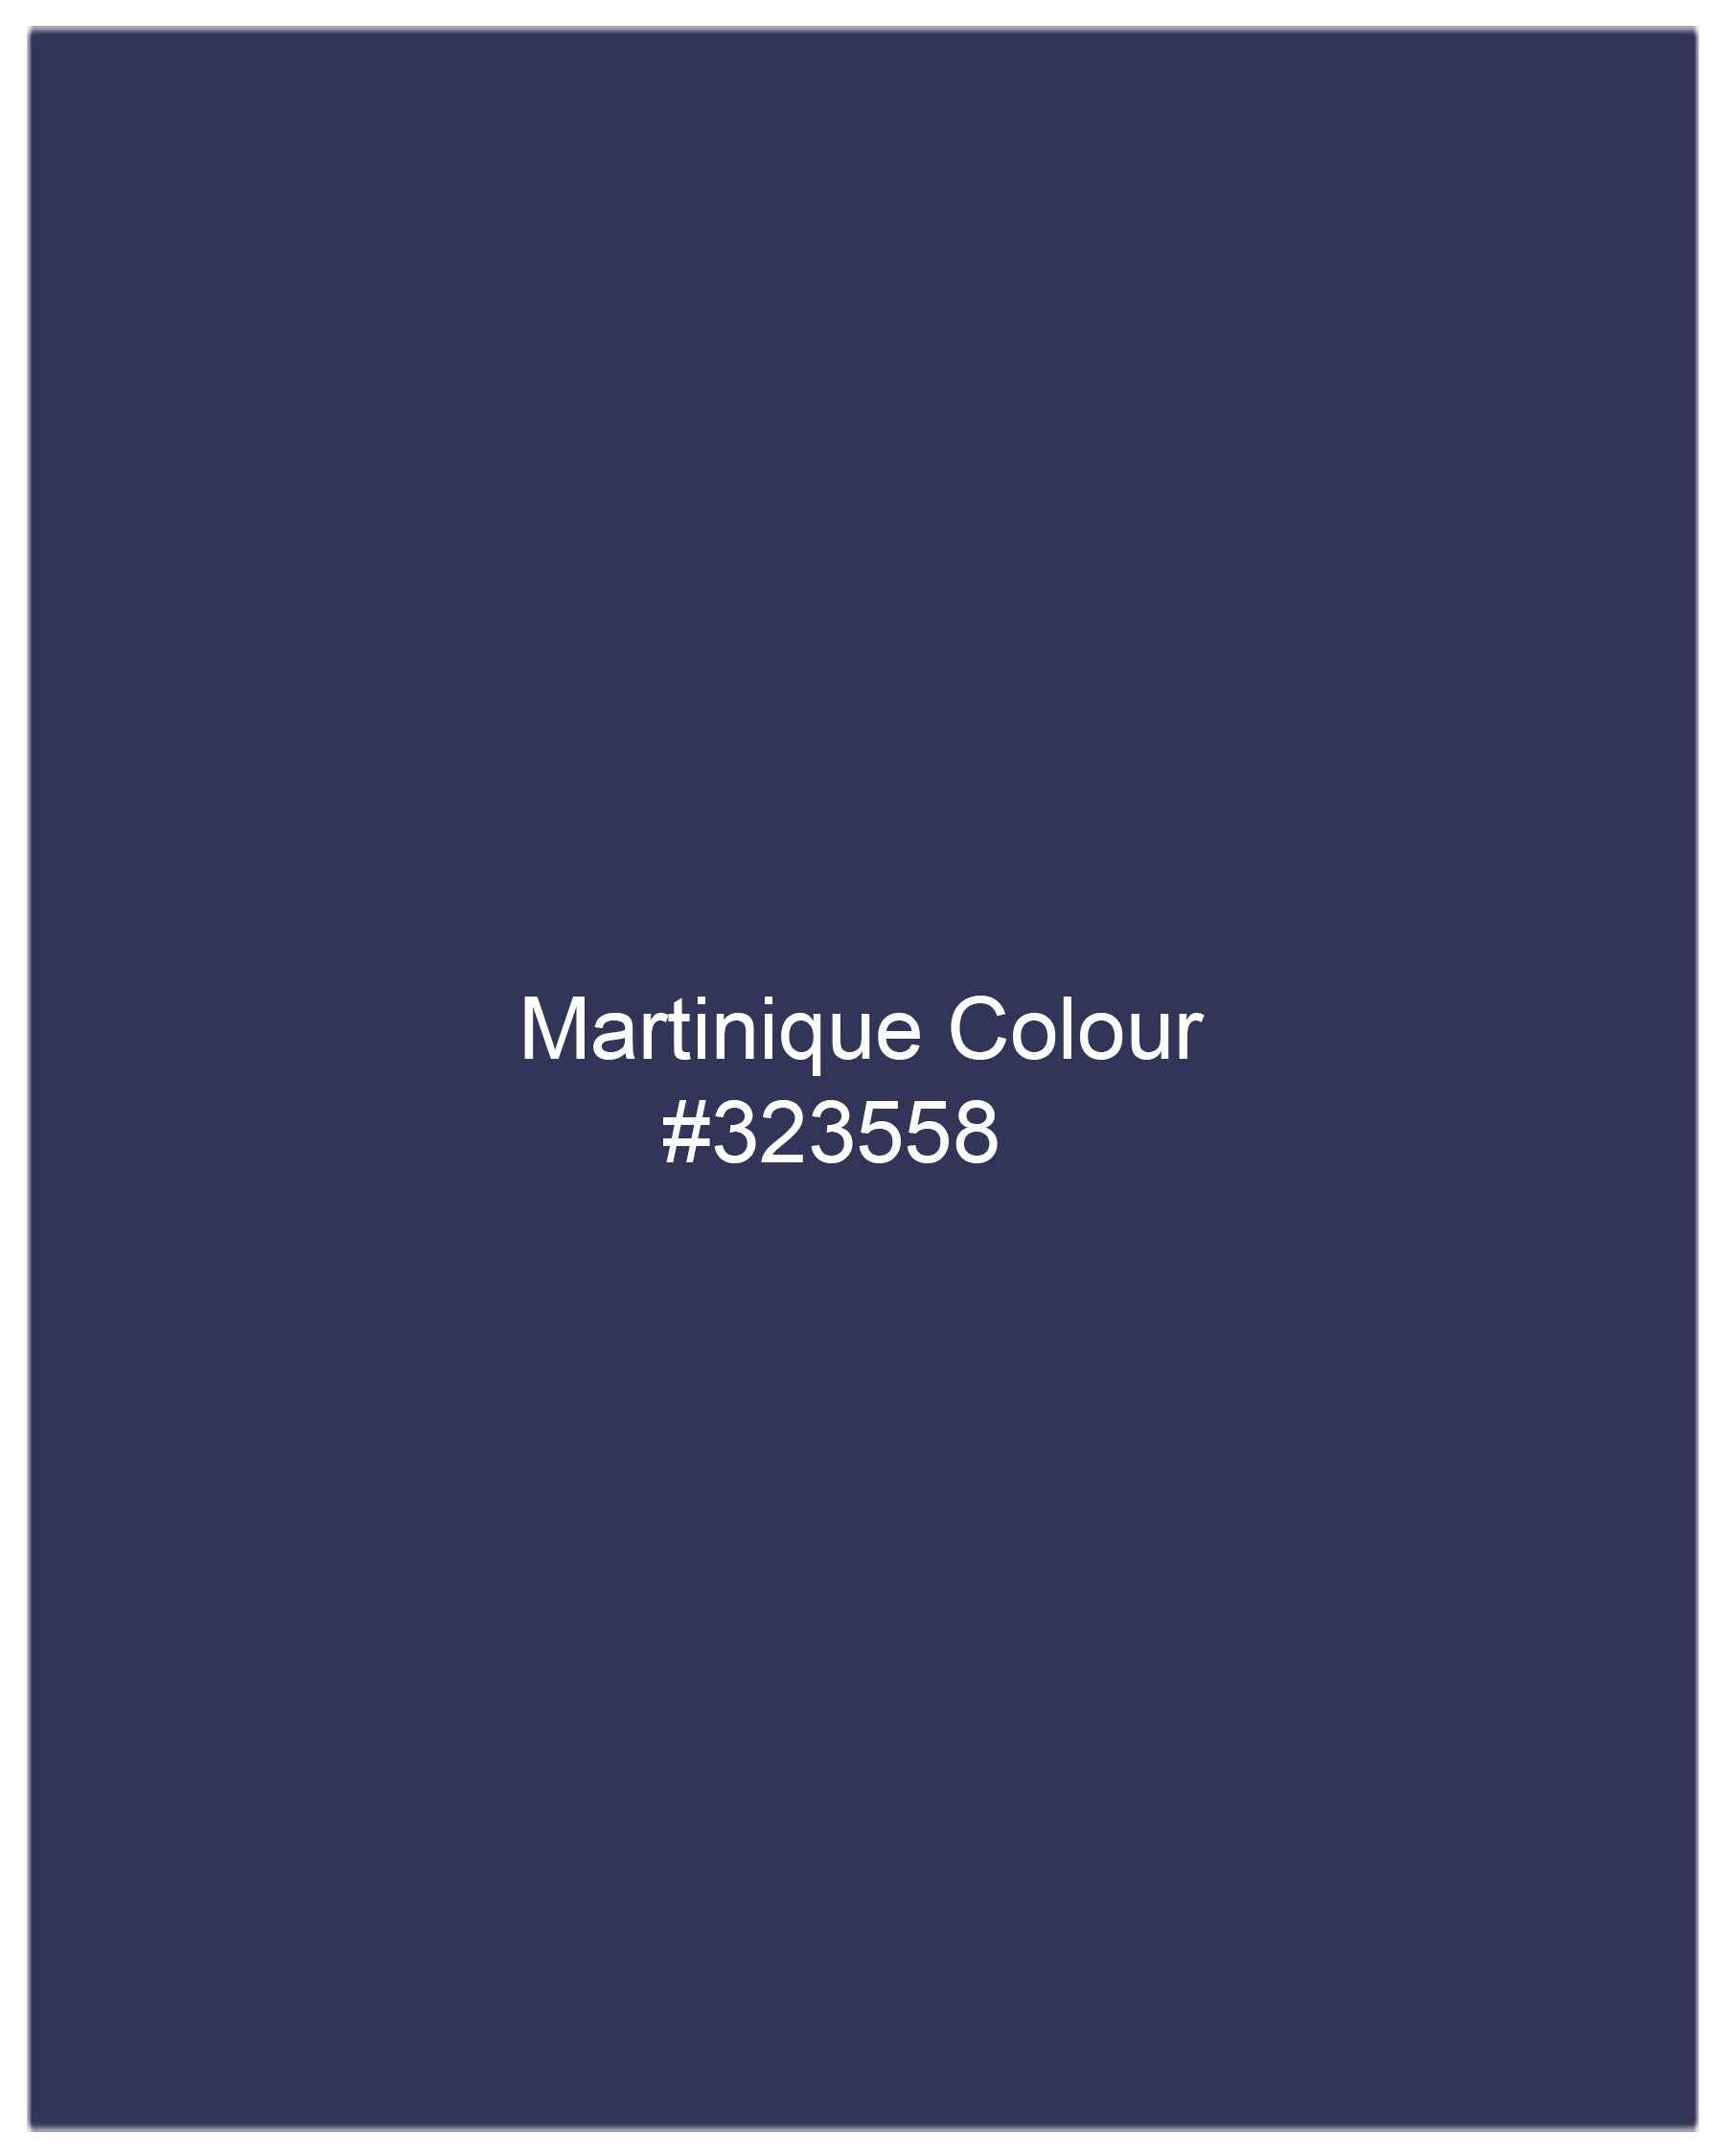 Martinique Blue Single Breasted Blazer BL1990-SBP-36, BL1990-SBP-38, BL1990-SBP-40, BL1990-SBP-42, BL1990-SBP-44, BL1990-SBP-46, BL1990-SBP-48, BL1990-SBP-50, BL1990-SBP-52, BL1990-SBP-54, BL1990-SBP-56, BL1990-SBP-58, BL1990-SBP-60